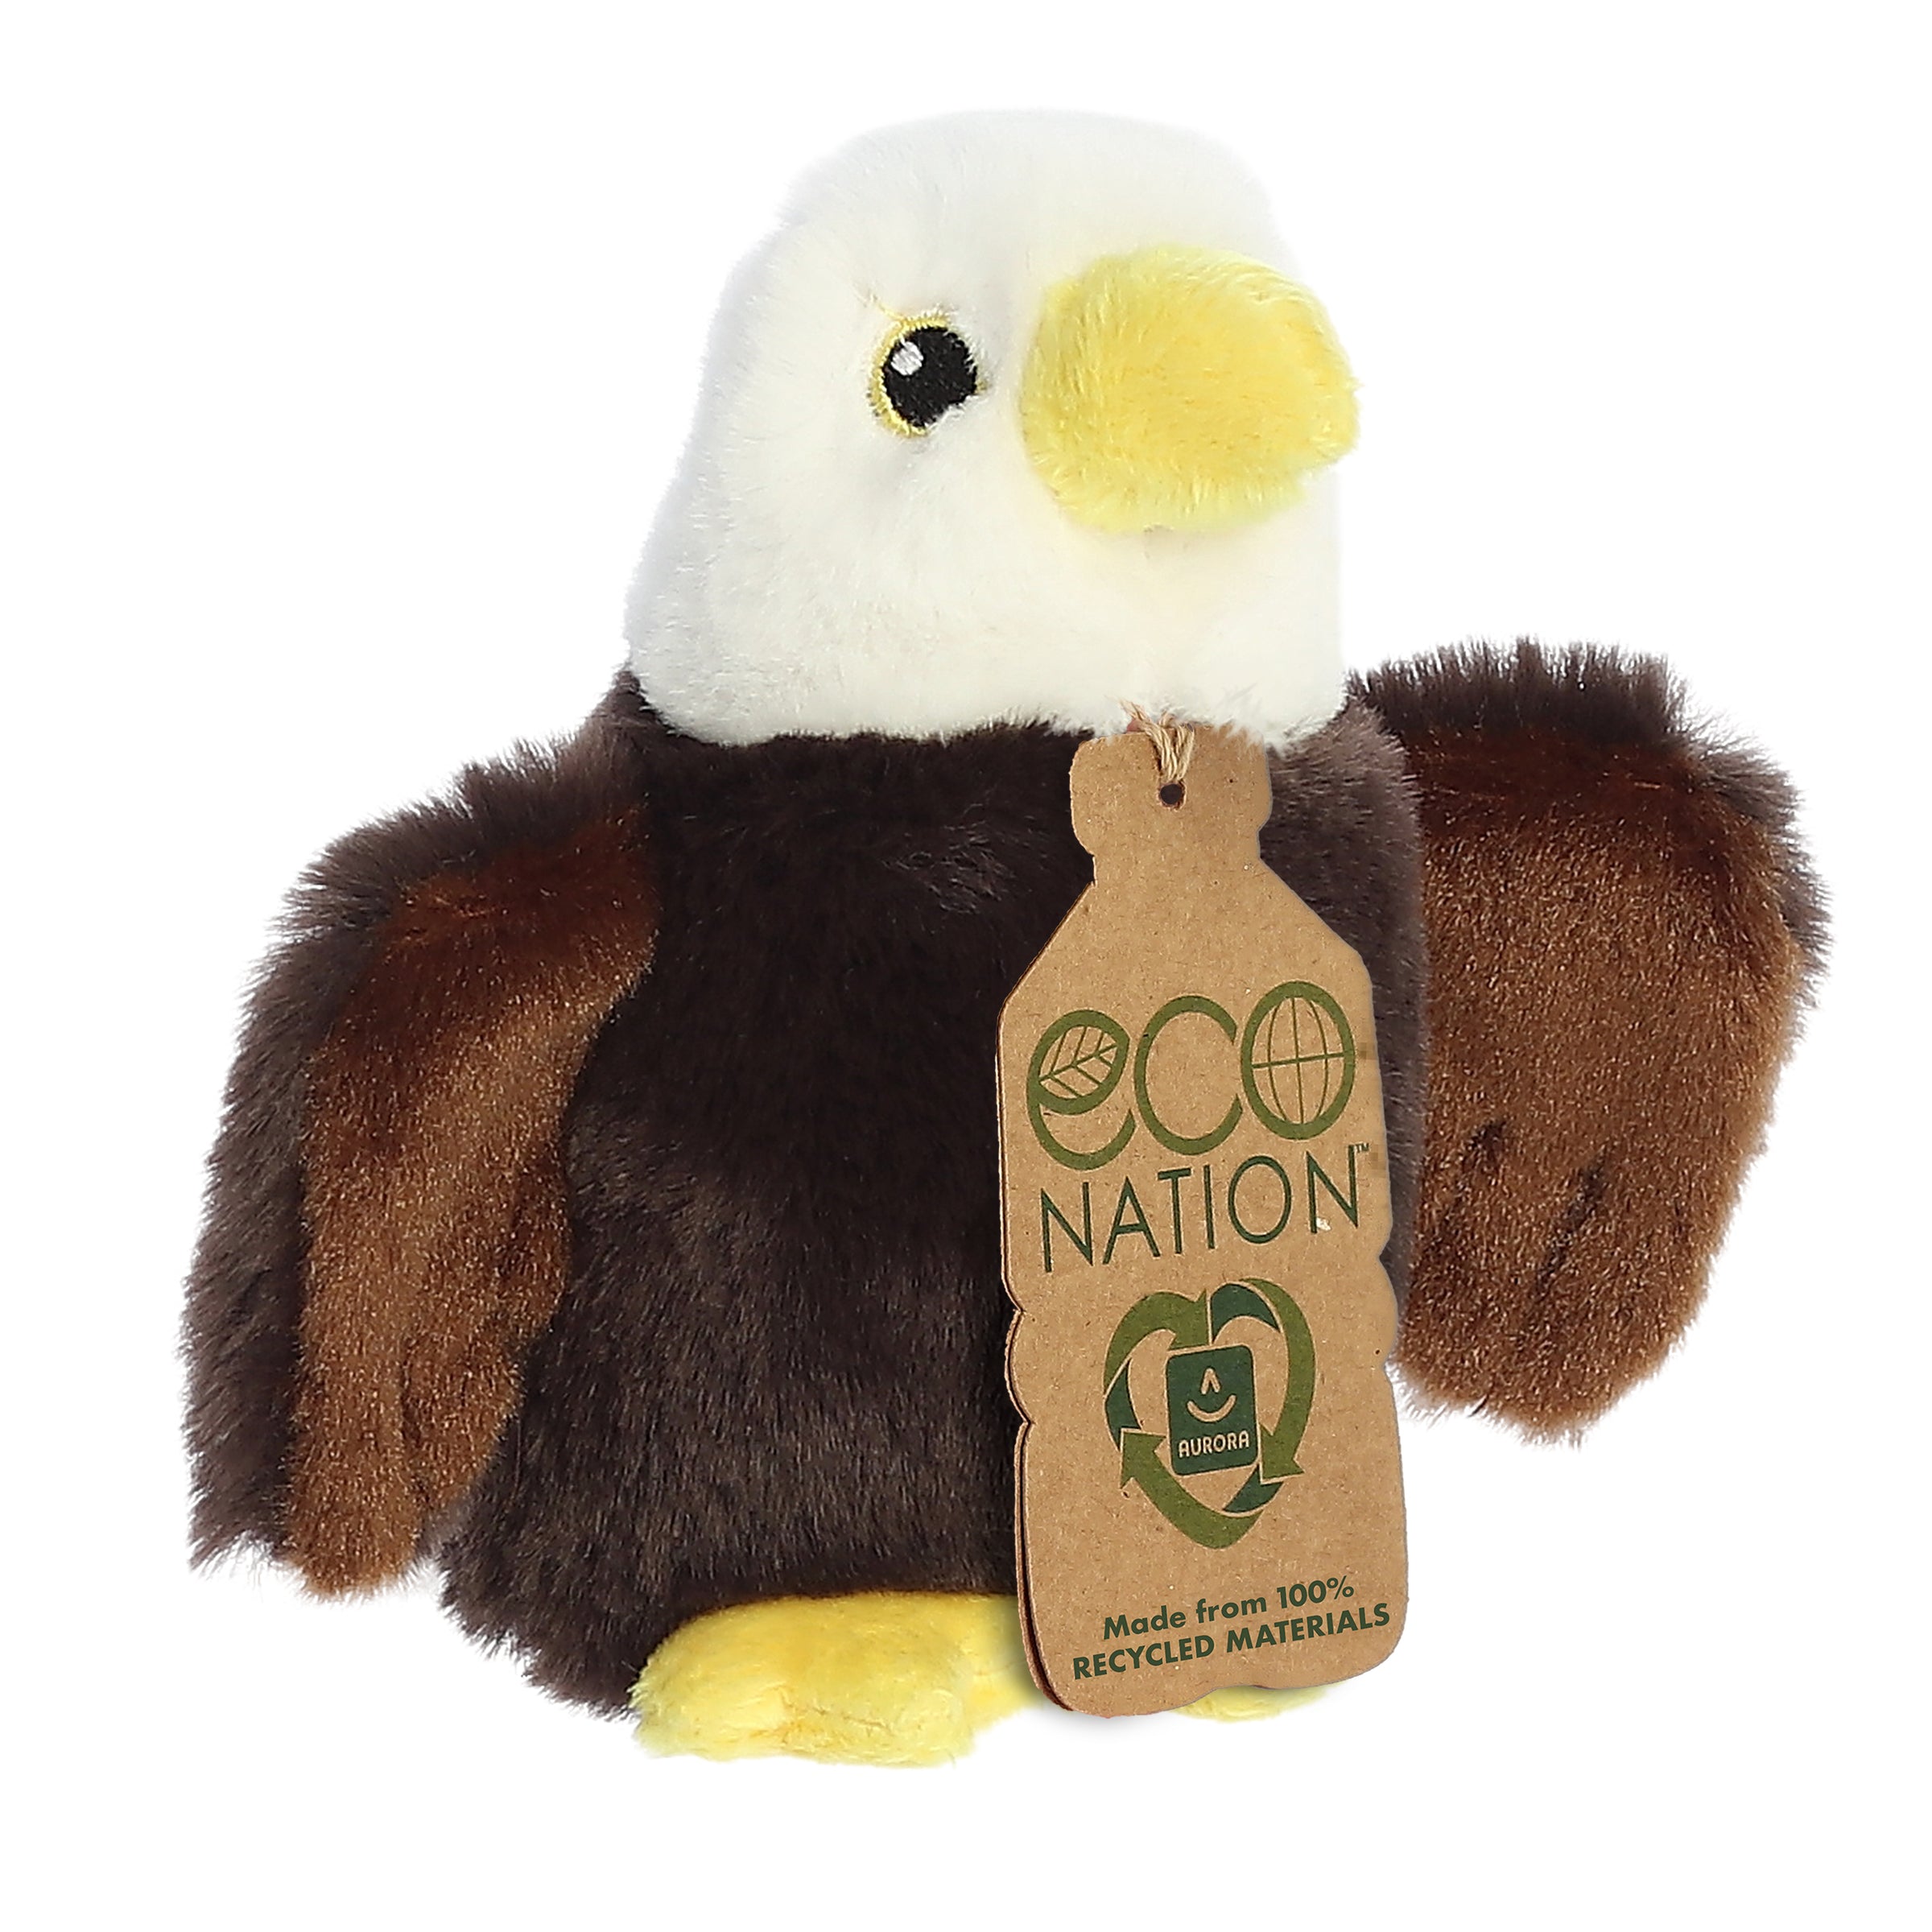 Aurora® - Eco Nation™ - 5" Eagle